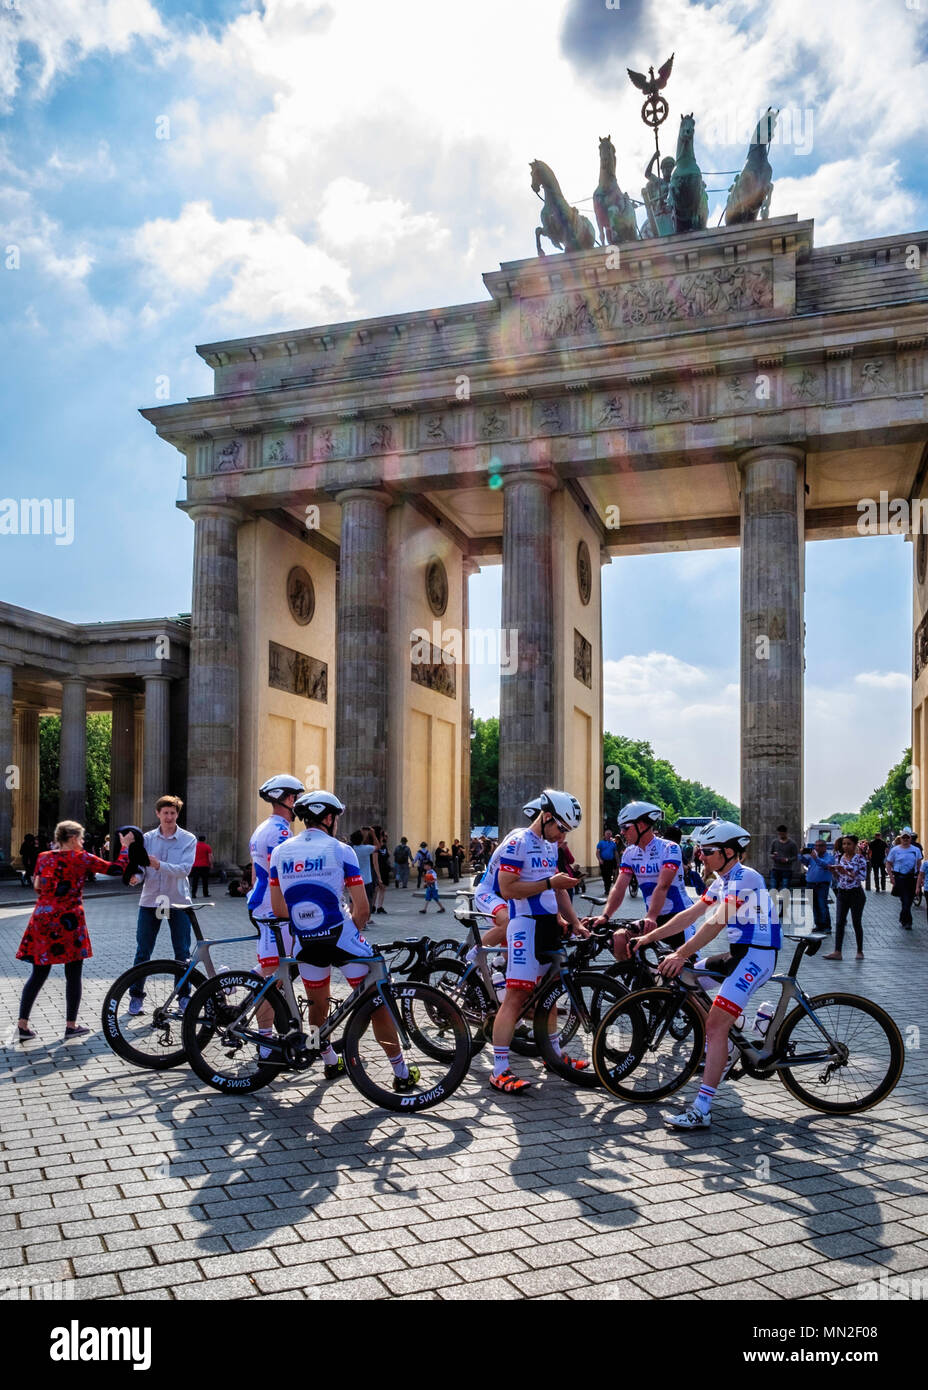 Berlin Mitte, BKK Mobil Oil Cycling Team presso la Porta di Brandeburgo il giorno prima dell'annuale 160Km Velothon. Team-stati, Valentin Szalay, ha vinto la gara Foto Stock